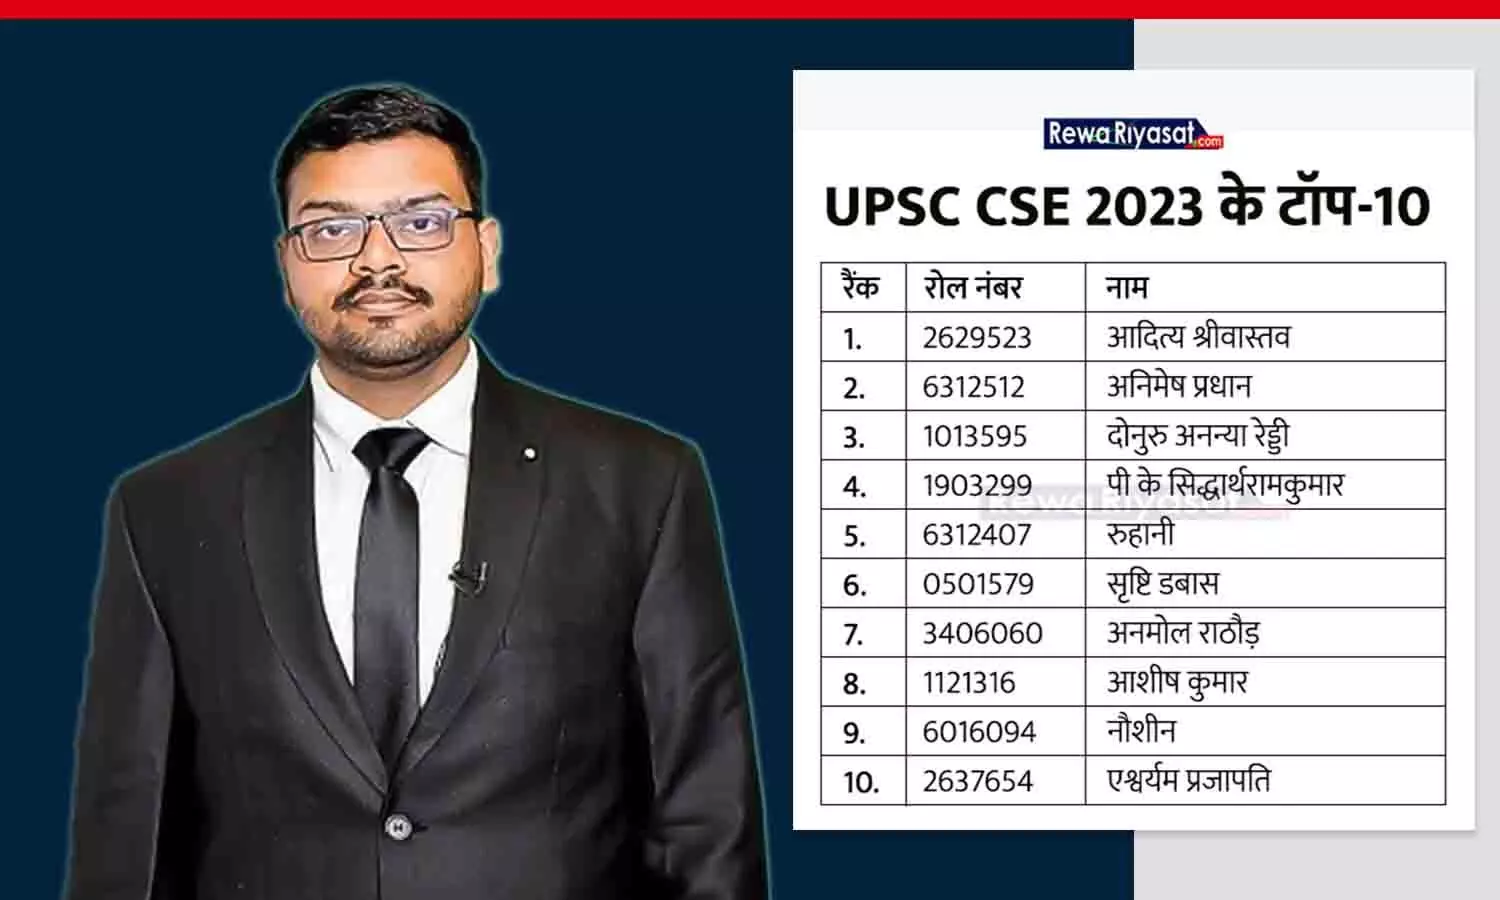 UPSC CSE 2023 का रिजल्ट जारी: 1016 कैंडिडेट सिविल सर्विसेज में सिलेक्ट हुए, 180 IAS और 200 IPS बनेंगे; लखनऊ के आदित्य टॉपर बनें